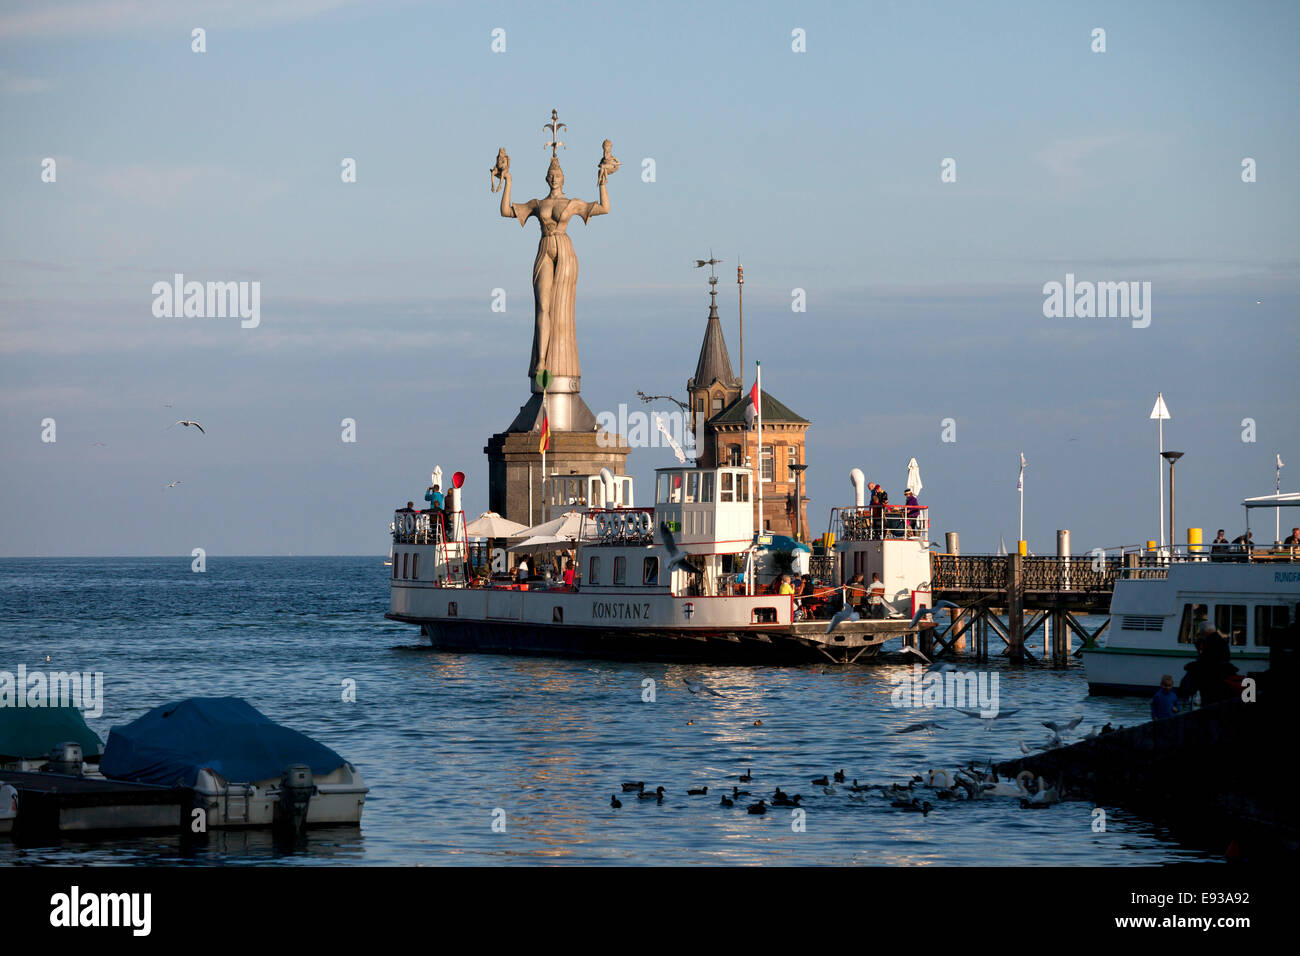 Hafeneinfahrt mit Imperia-Statue, Bodensee, Konstanz, Baden-Württemberg, Deutschland, Europa Stockfoto